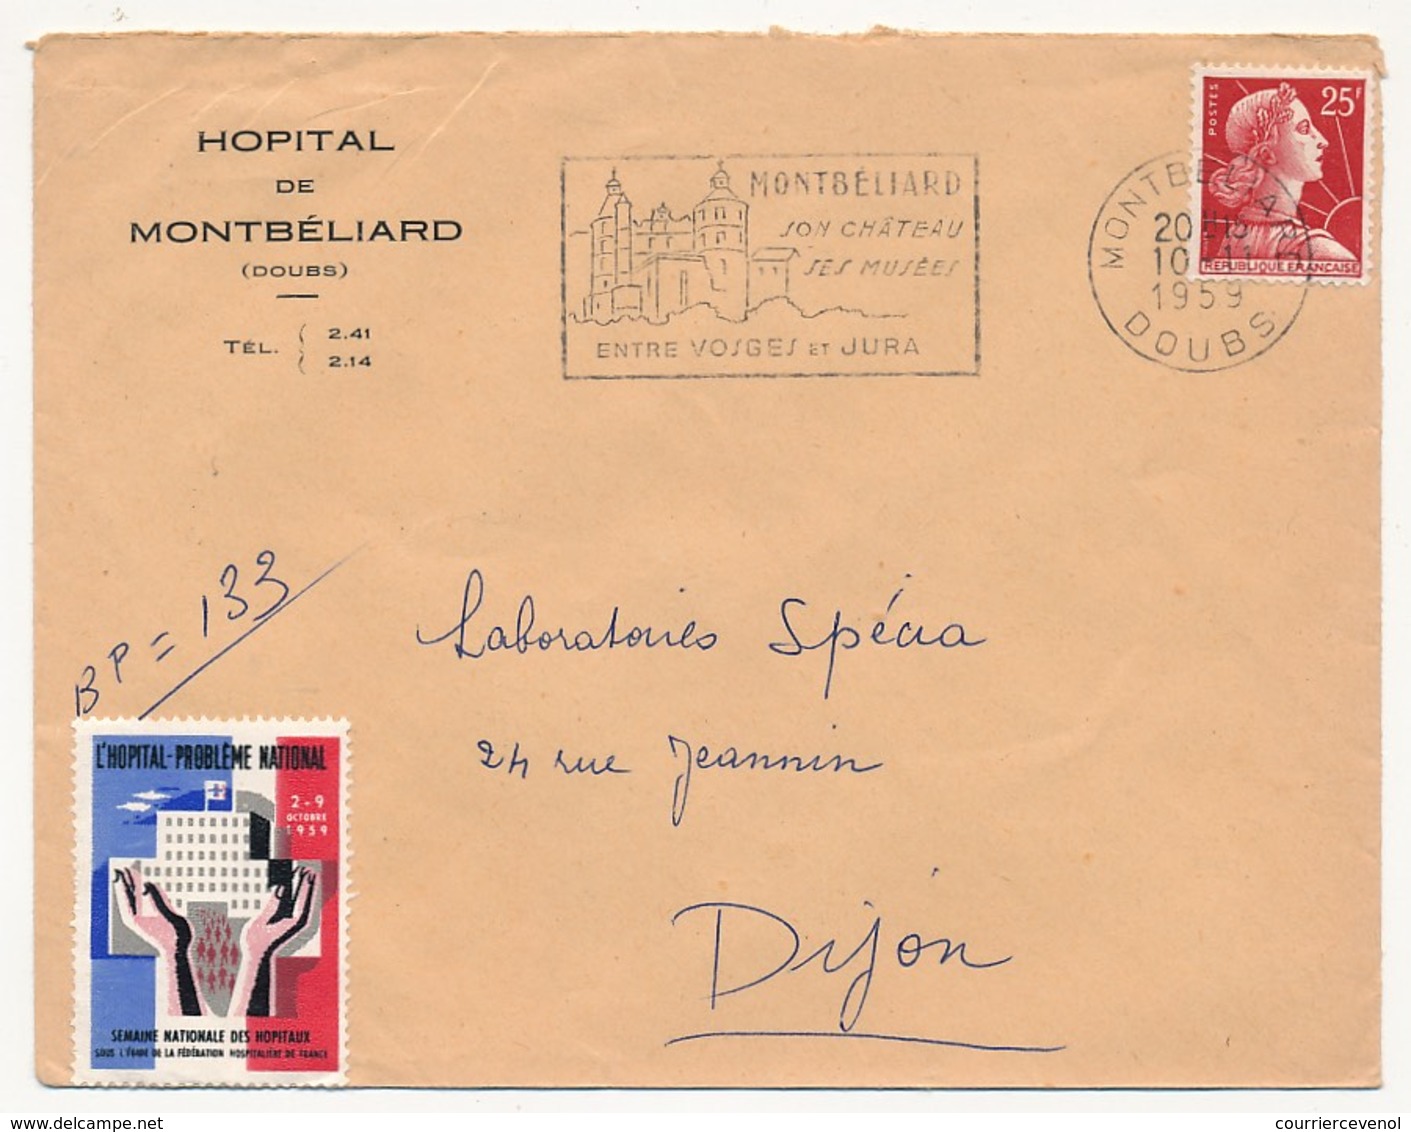 FRANCE - Enveloppe Affr 25F Muller Avec Vignette "L'Hopital Problème National" - Hopital De Montbéliard (Doubs) 1959 - Covers & Documents